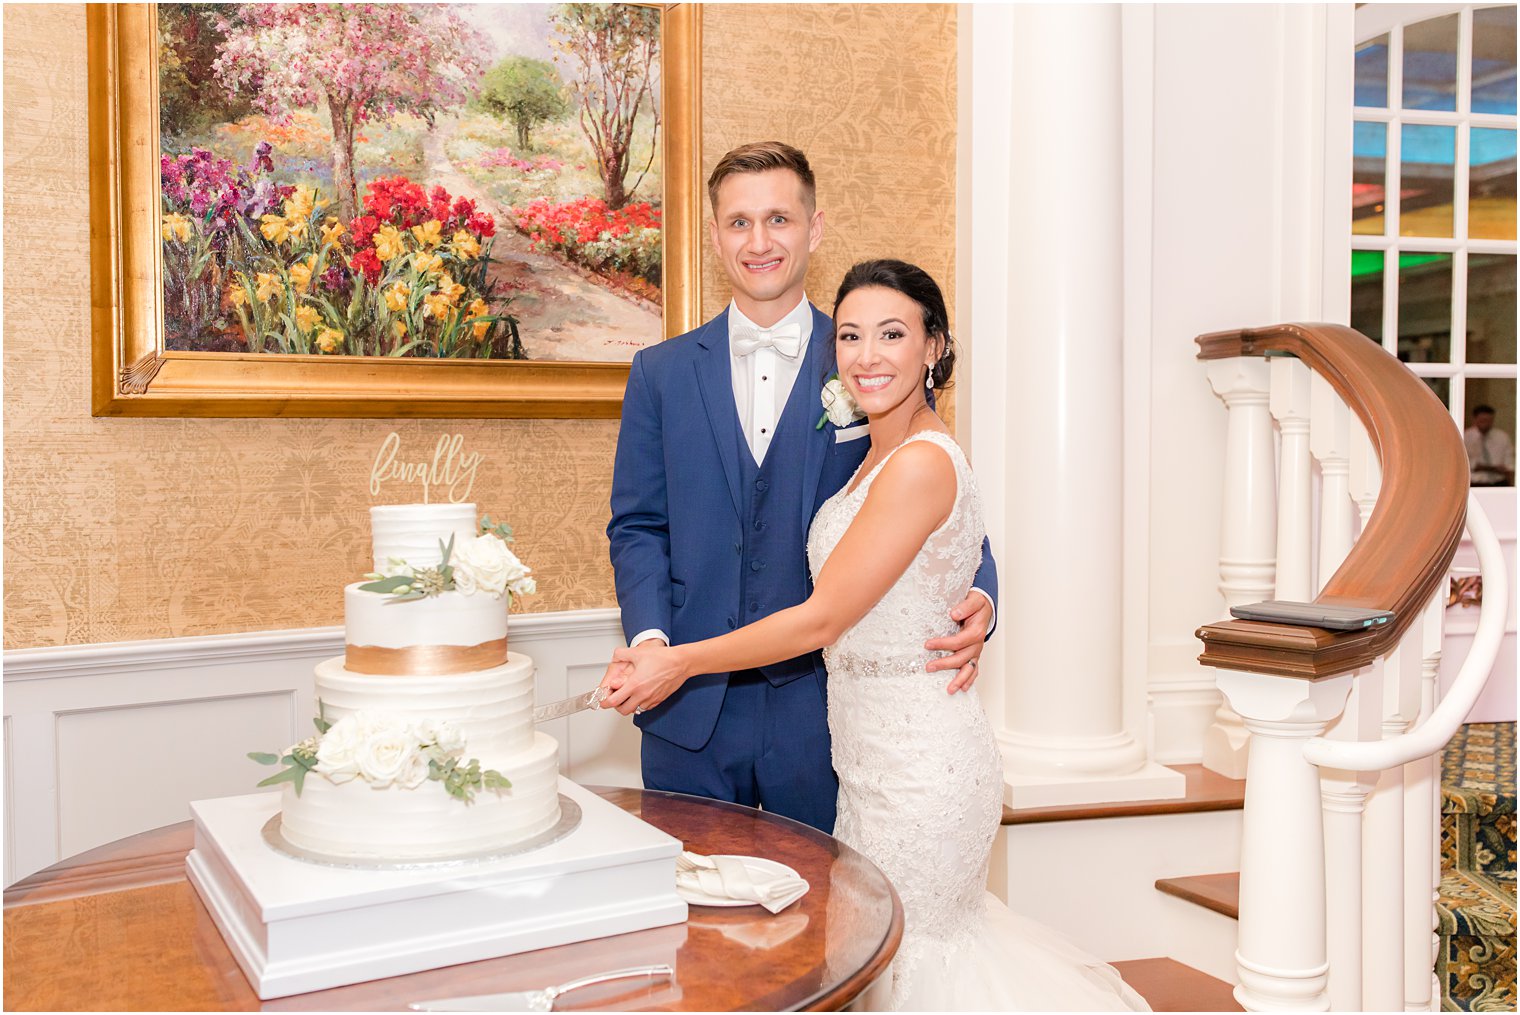 newlyweds cut wedding cake during Delran NJ wedding reception